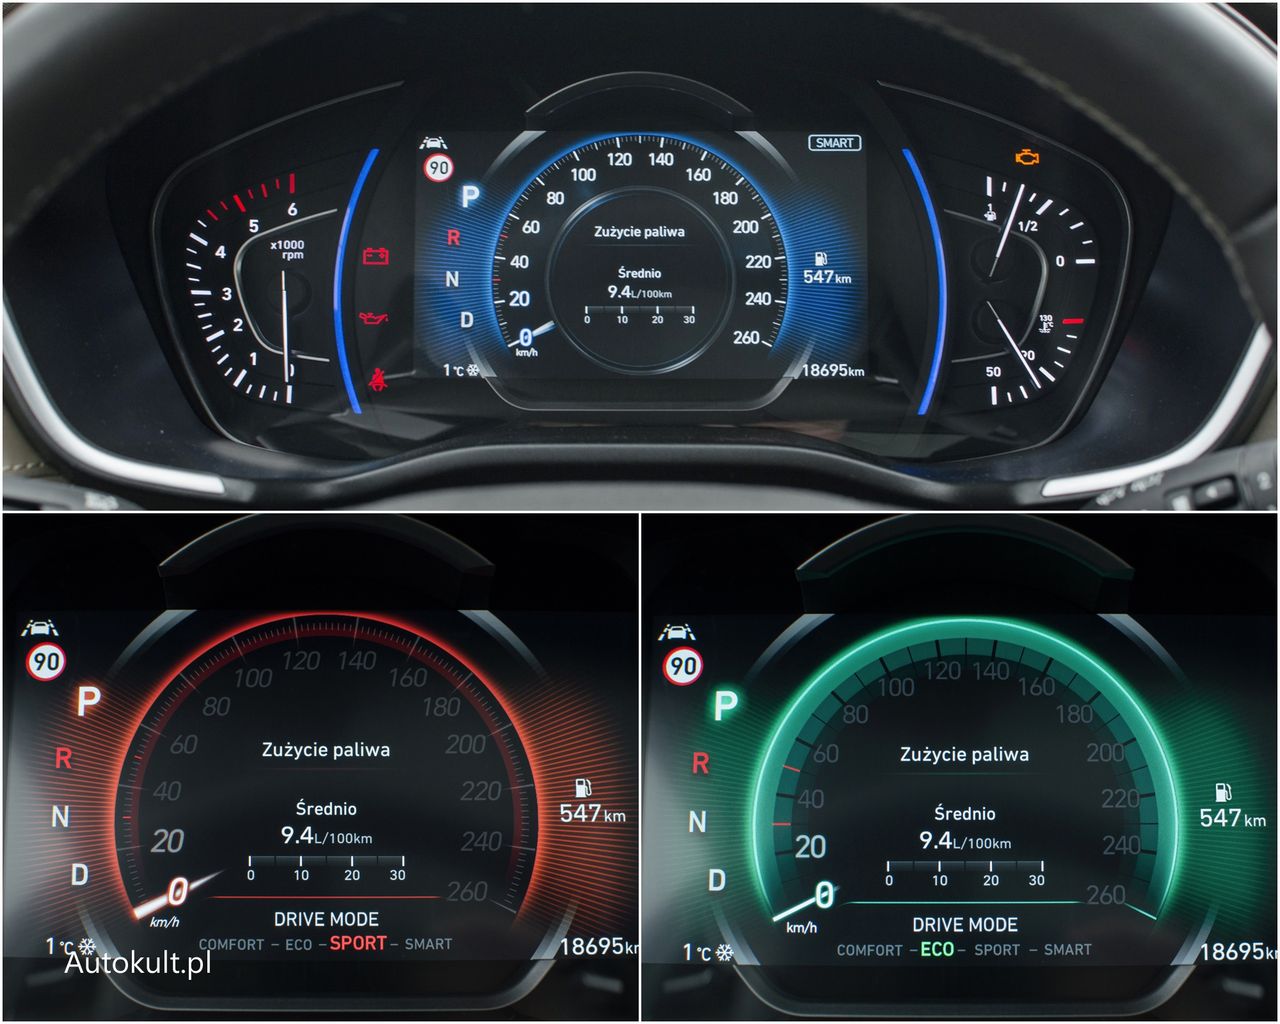 Cyfrowe wskaźniki tylko w najwyższym standardzie wyposażenia. Kolor oznacza tryb jazdy. Smart może z powodzeniem zastąpić zielony Eco i czerwony Sport.